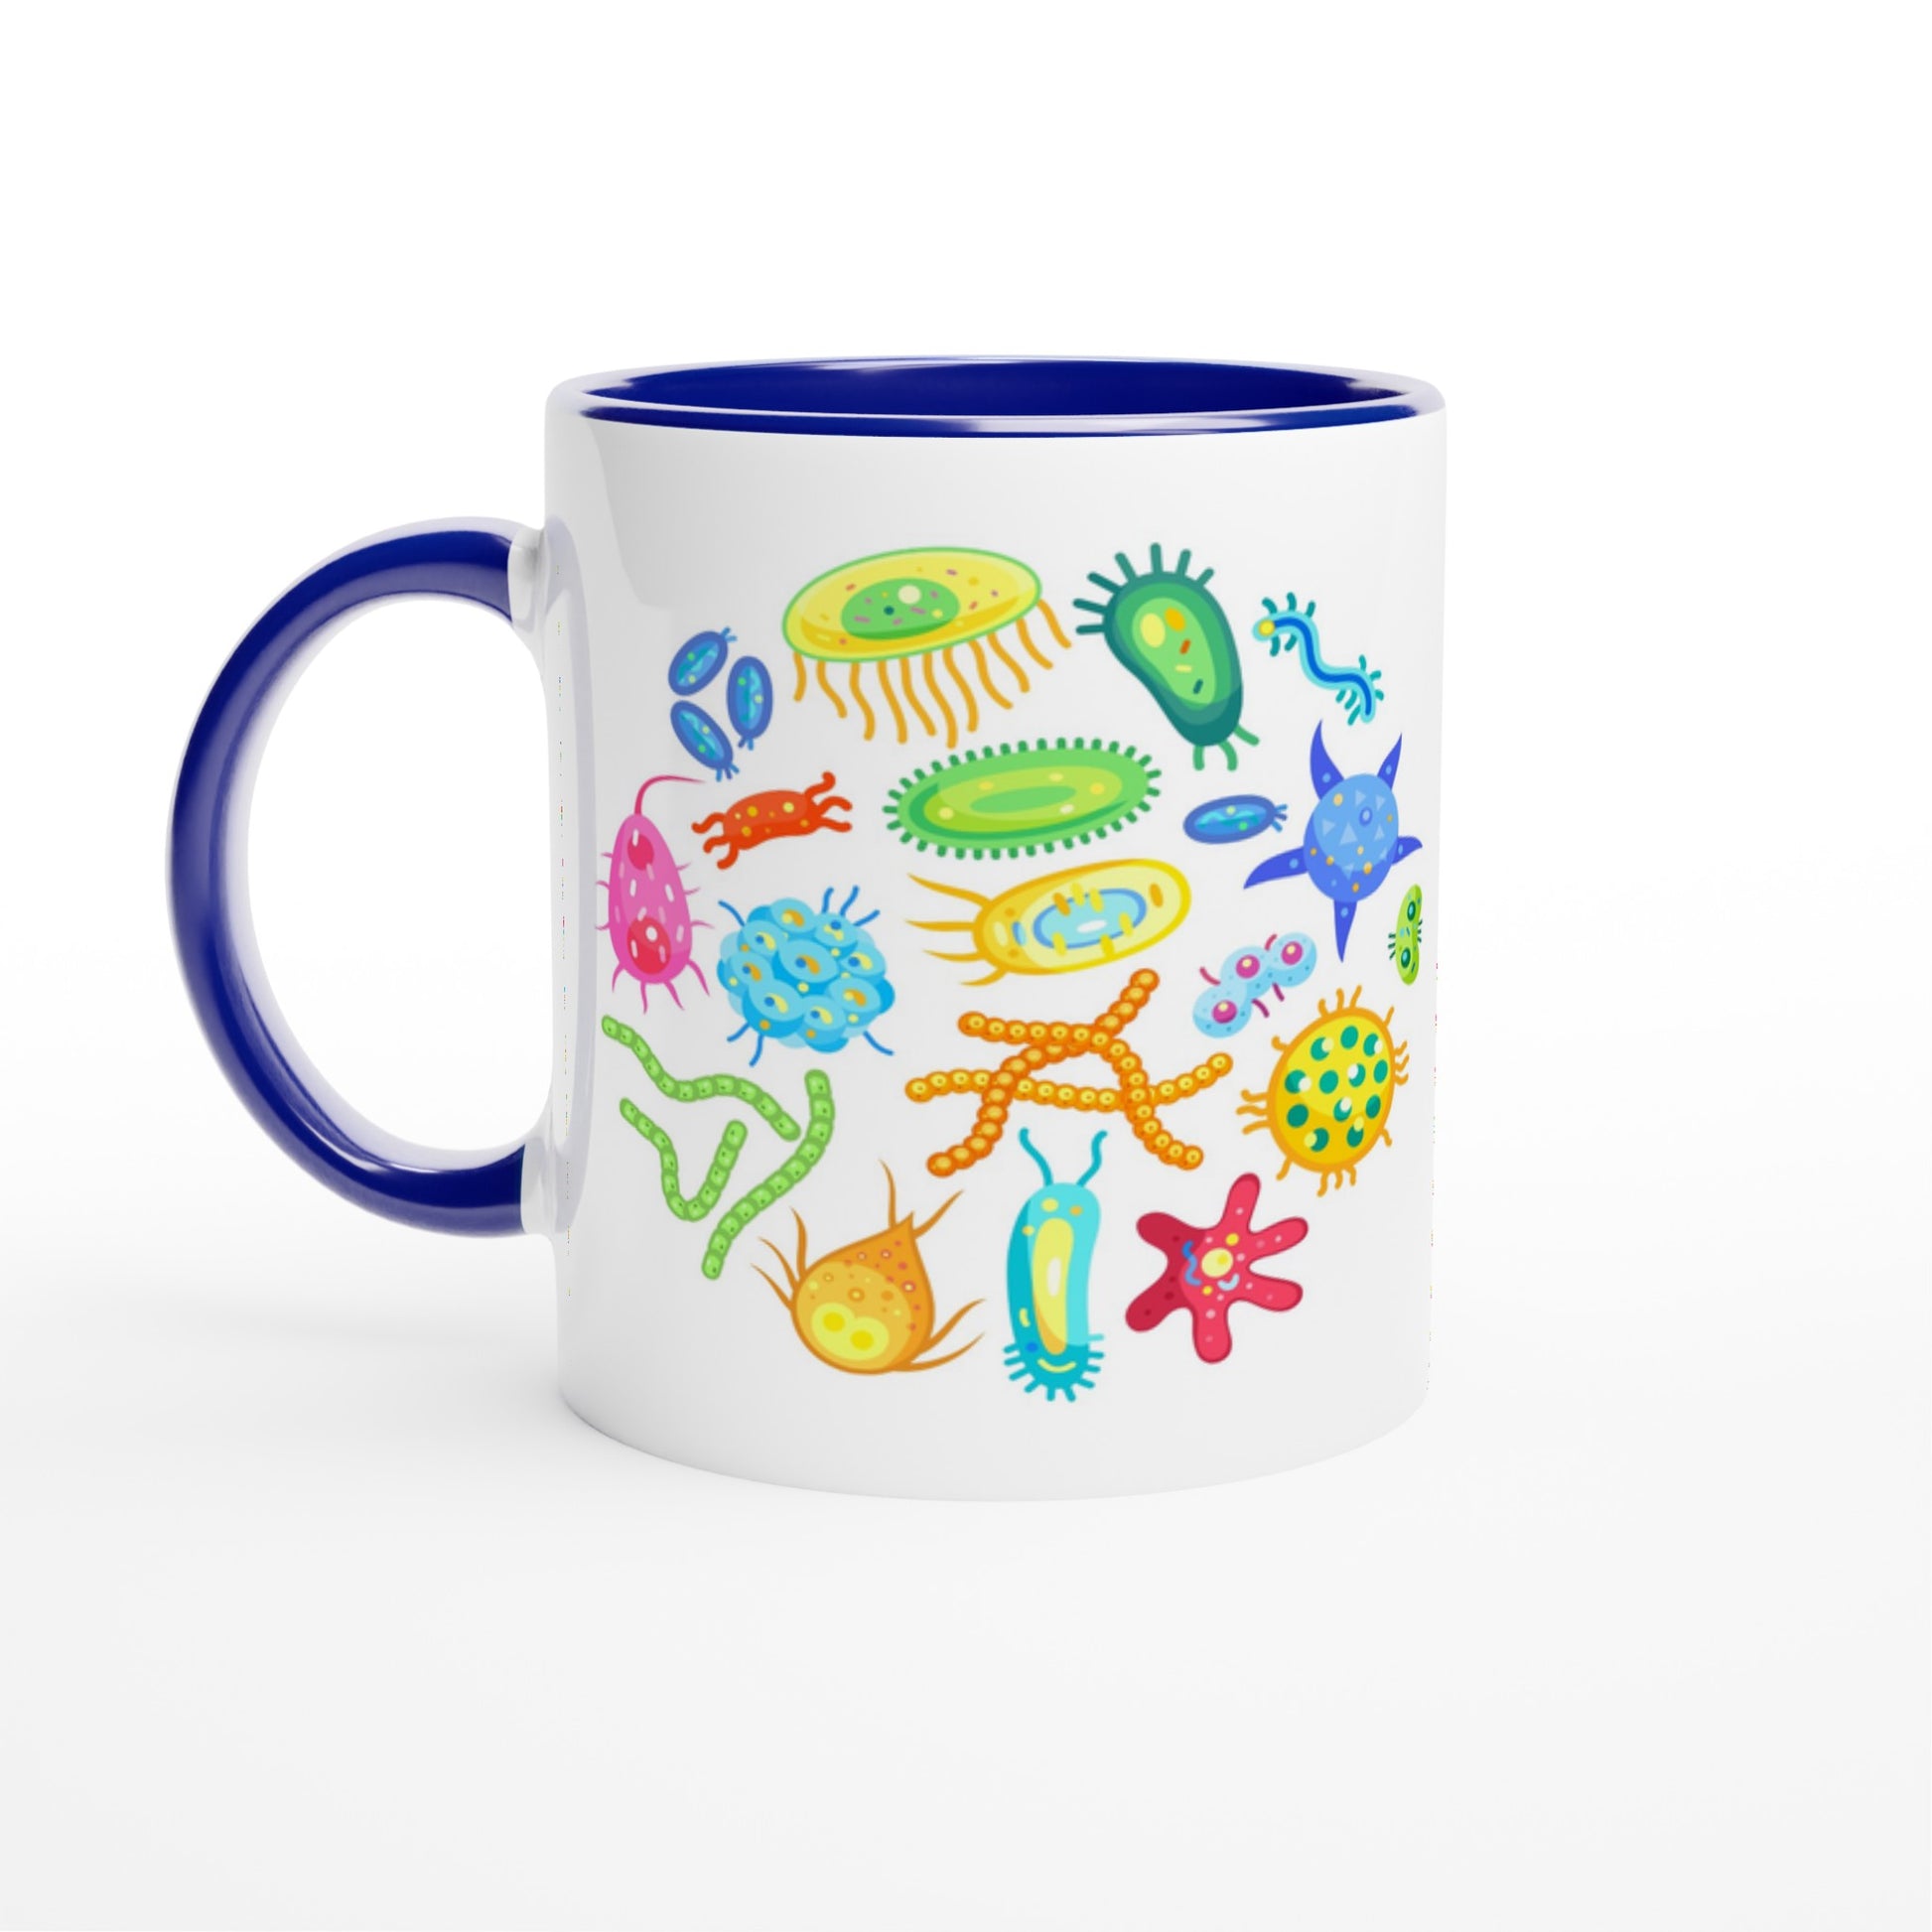 Under The Microscope - White 11oz Ceramic Mug with Colour Inside Ceramic Blue Colour 11oz Mug Science